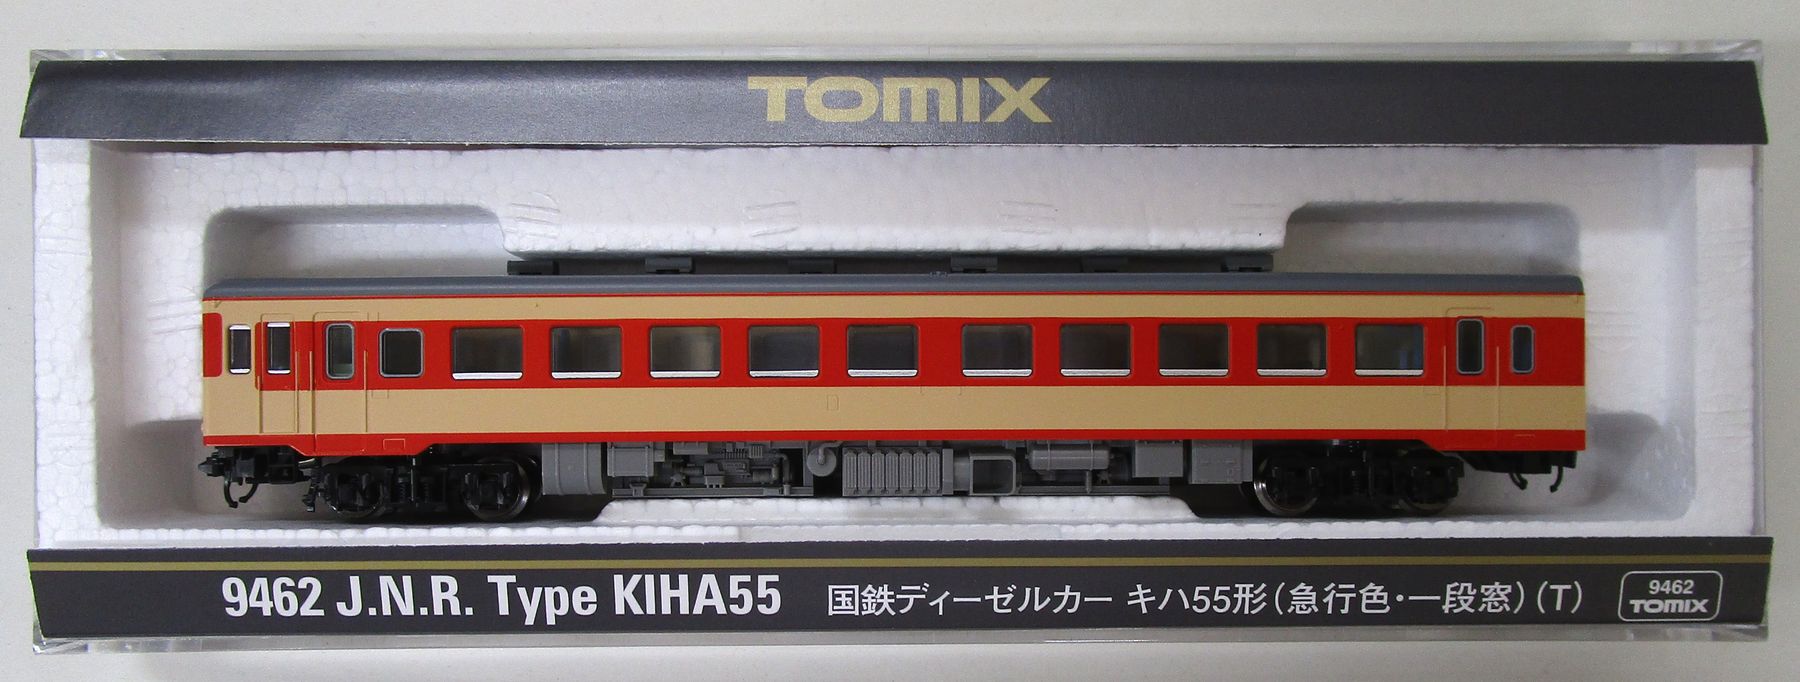 公式]鉄道模型(9462国鉄ディーゼルカー キハ55形 (急行色・一段窓) (T